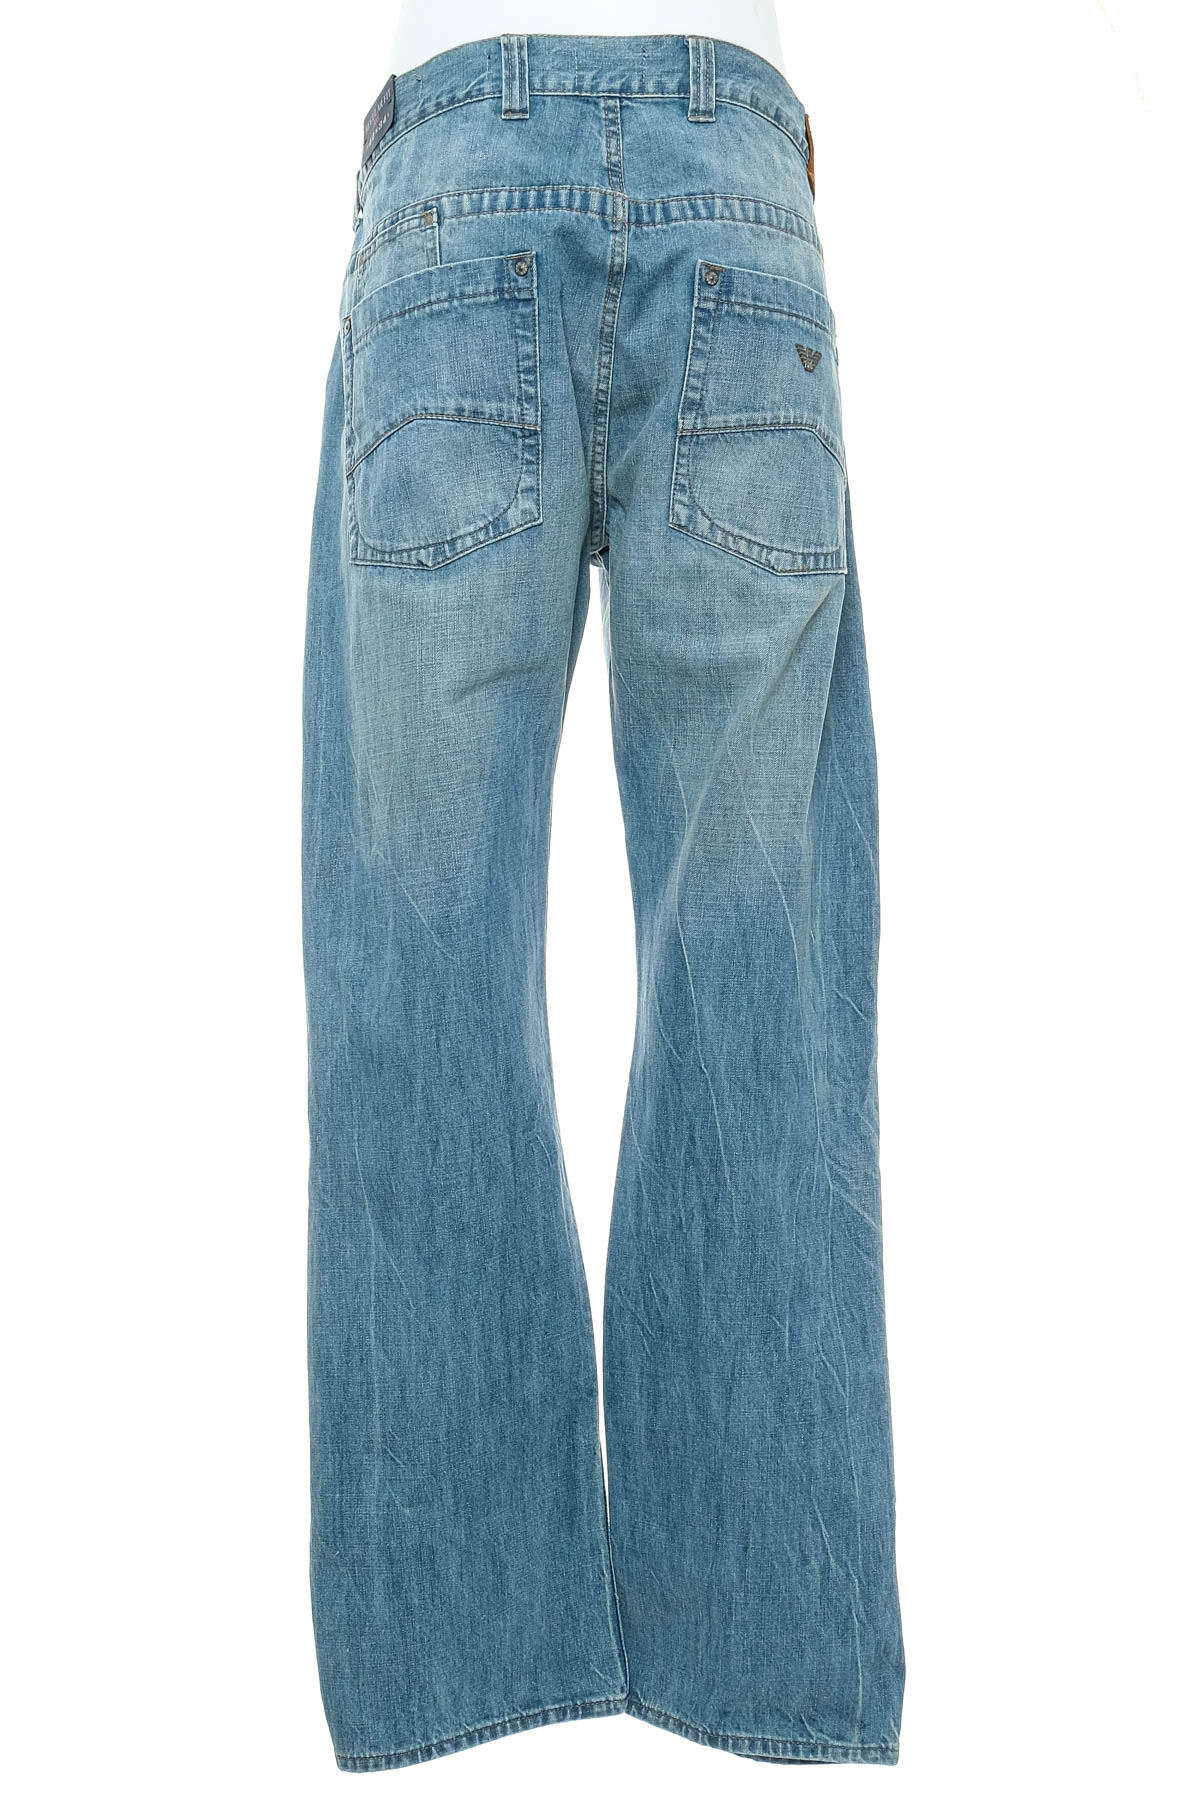 Men's jeans - Armani Jeans - 1